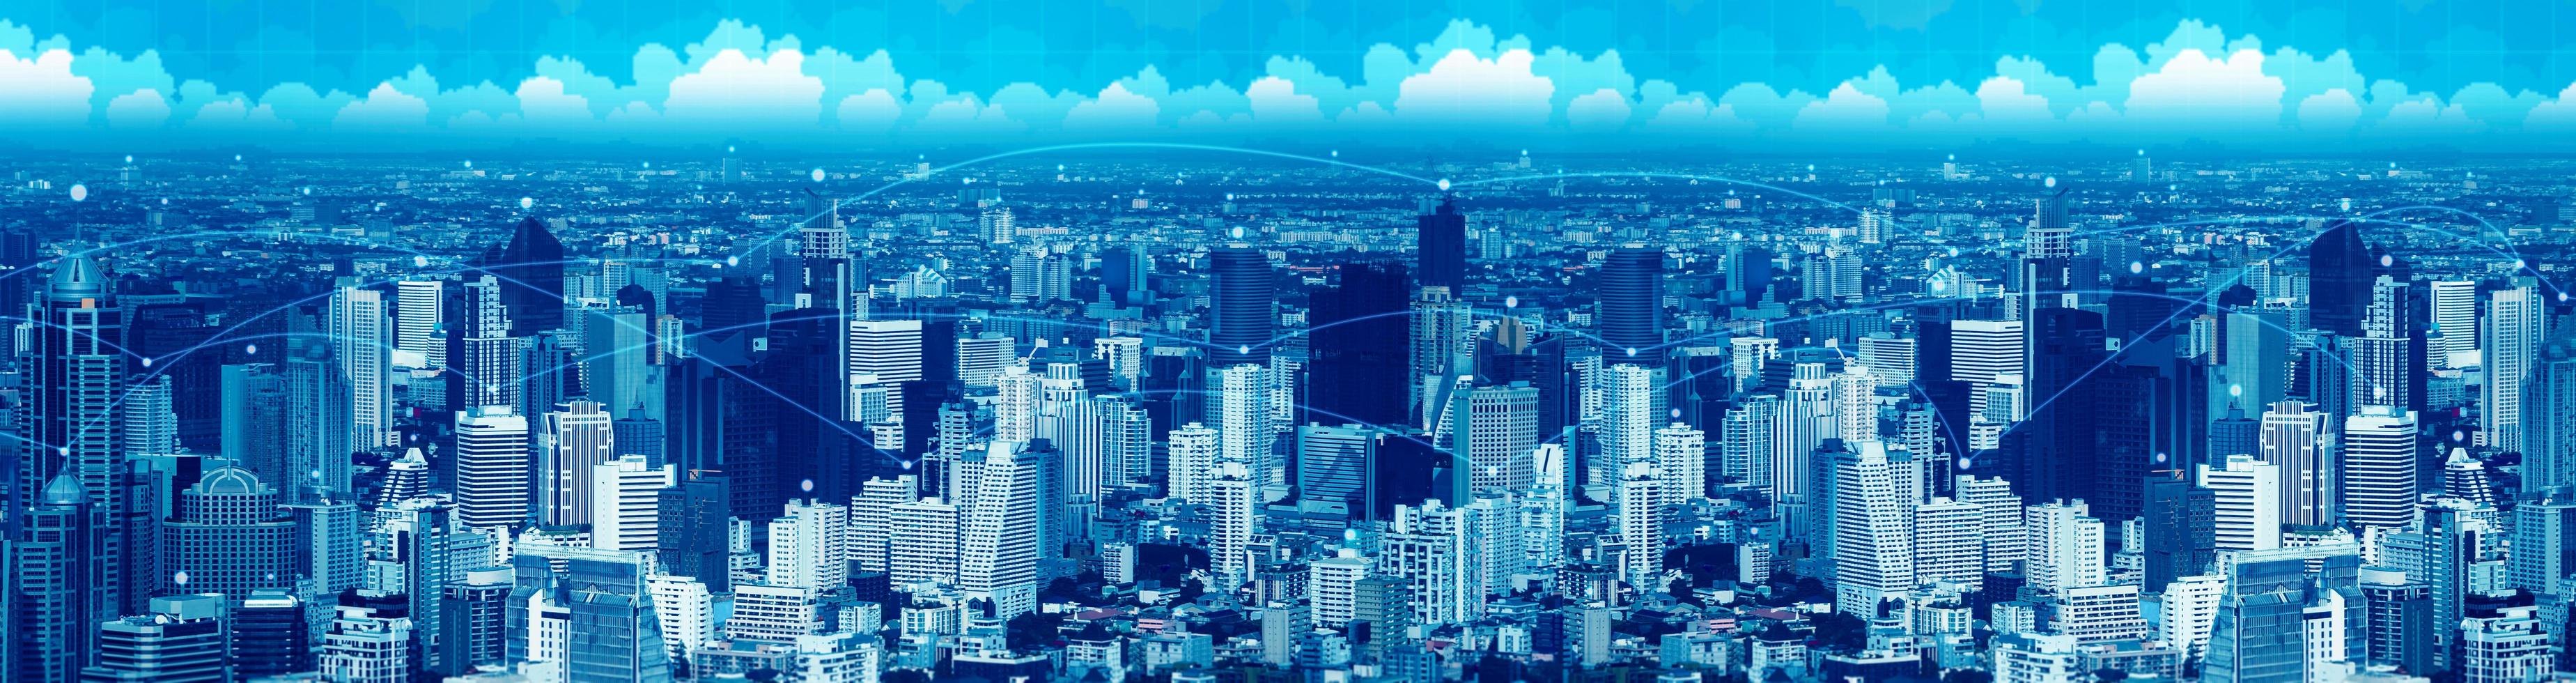 blauwe visuele stad met digitale netwerklijn voor data connect-technologie foto